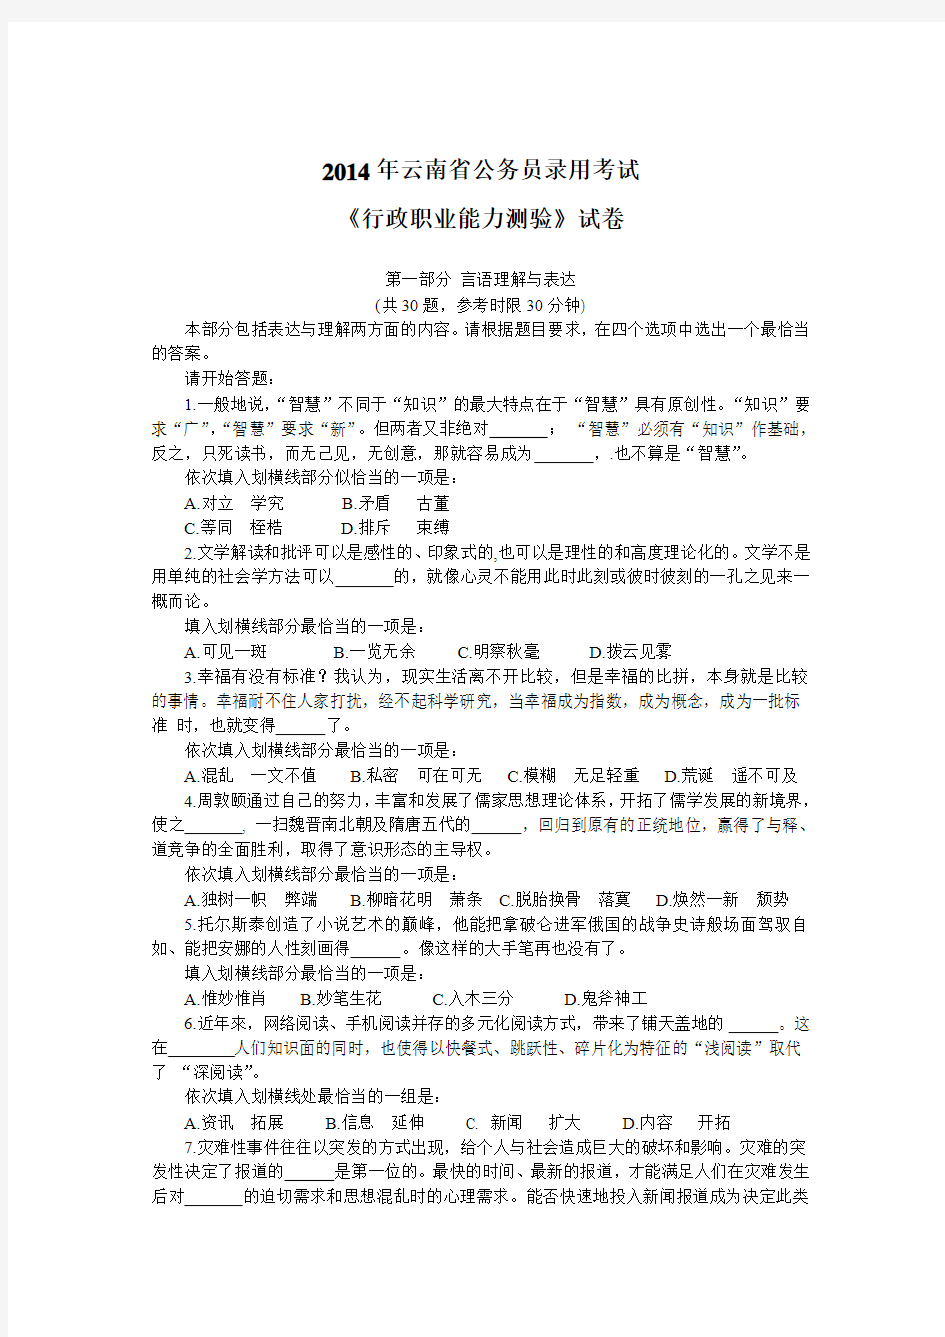 2013年云南省公务员考试行测真题及答案解析-完整版